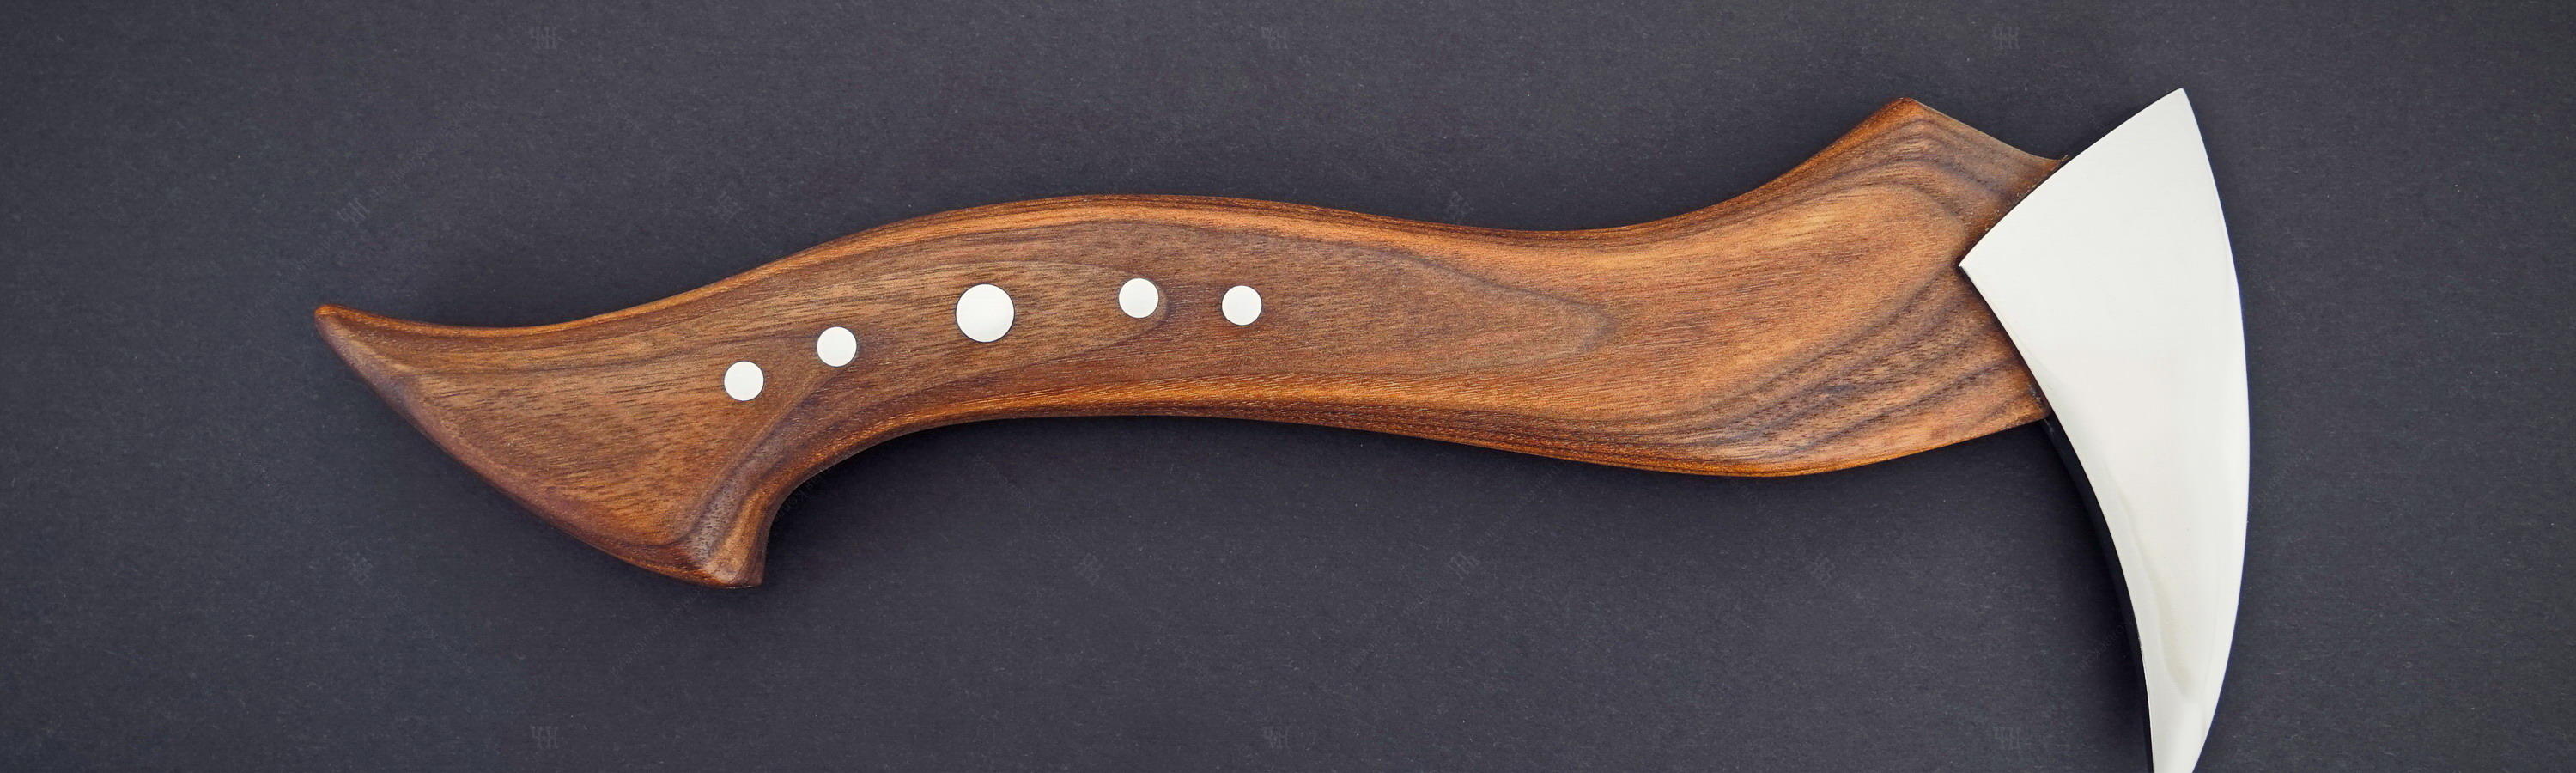 Author's souvenir axe